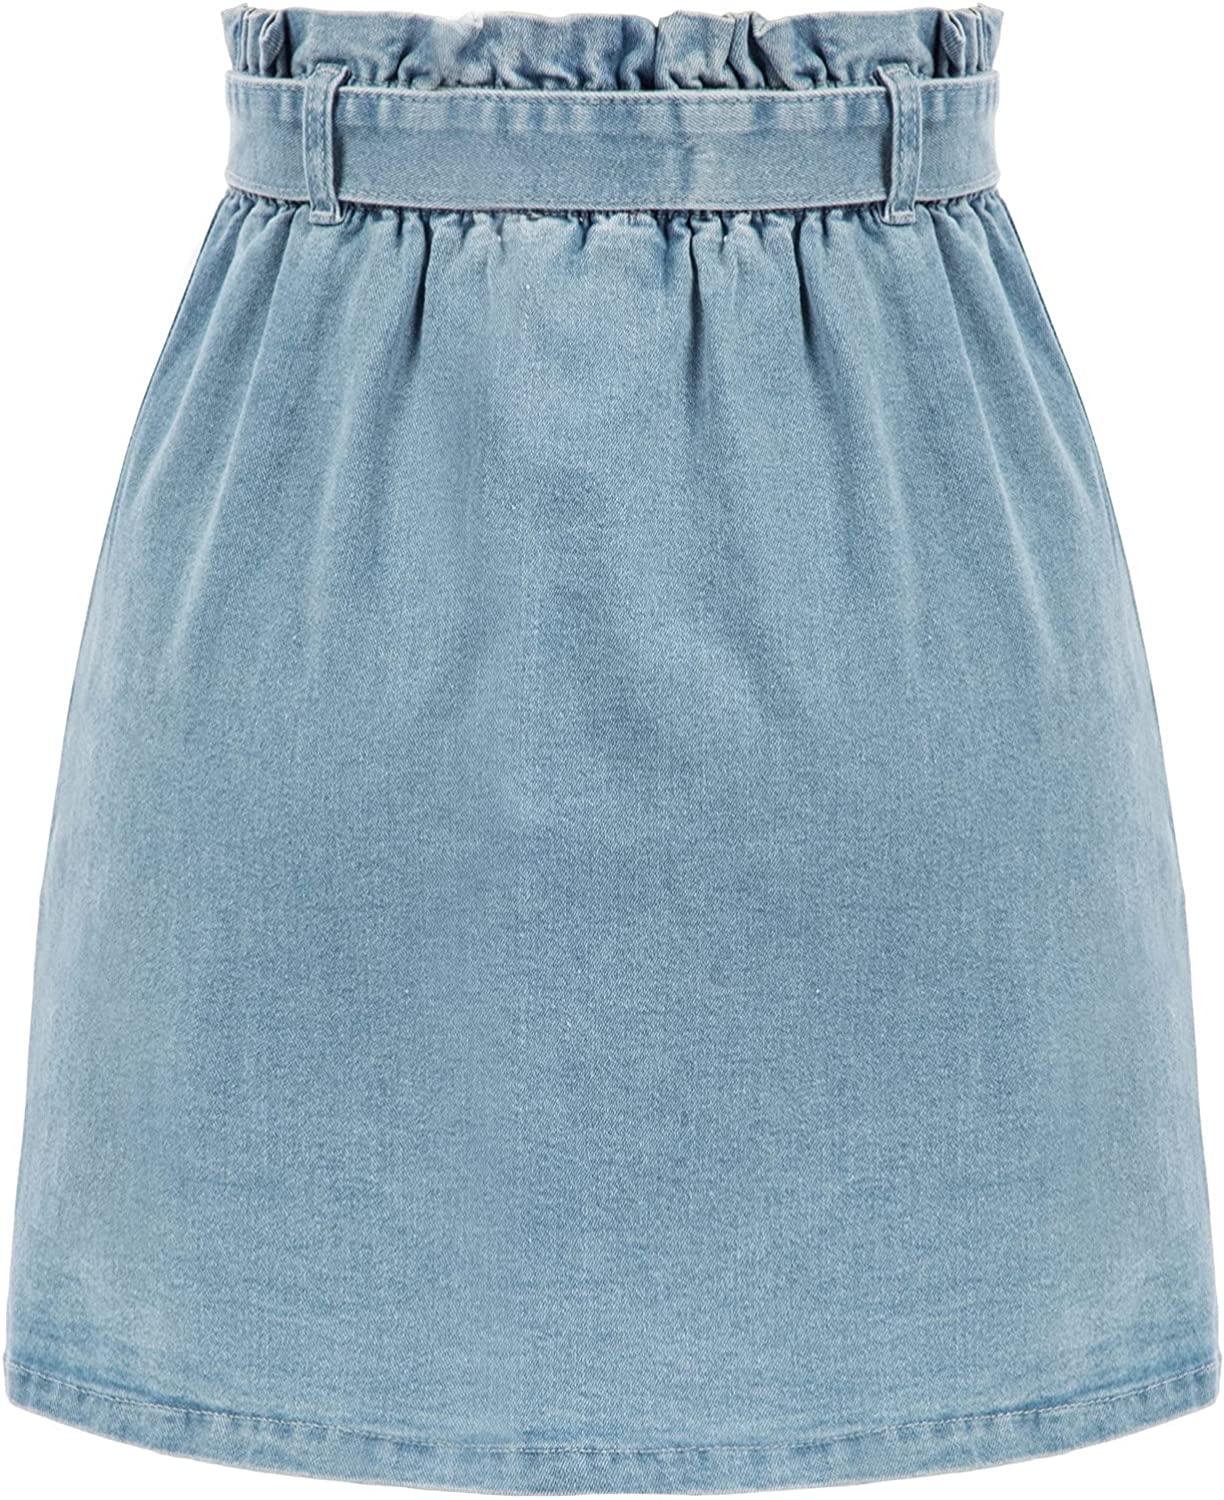 KANCY KOLE Women High Waist Paperbag Skirt Casual Short A-Line Skirts with Pockets S-XXL 